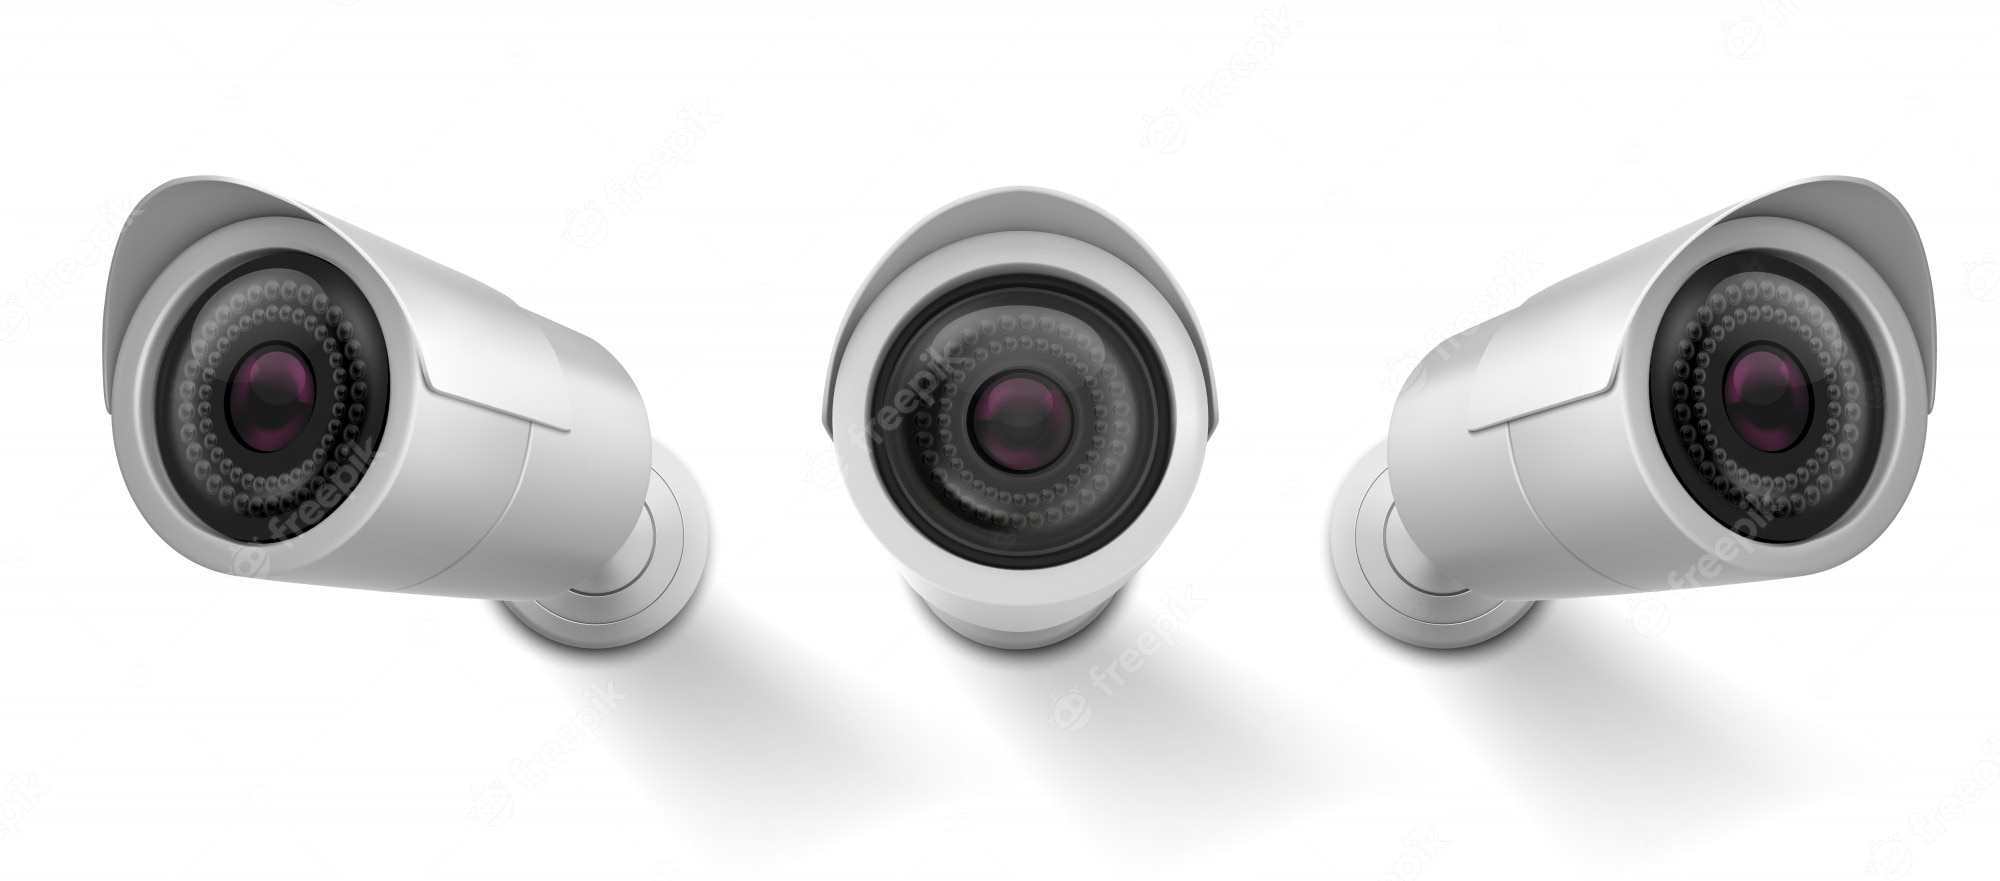 Wired outdoor surveillance camera